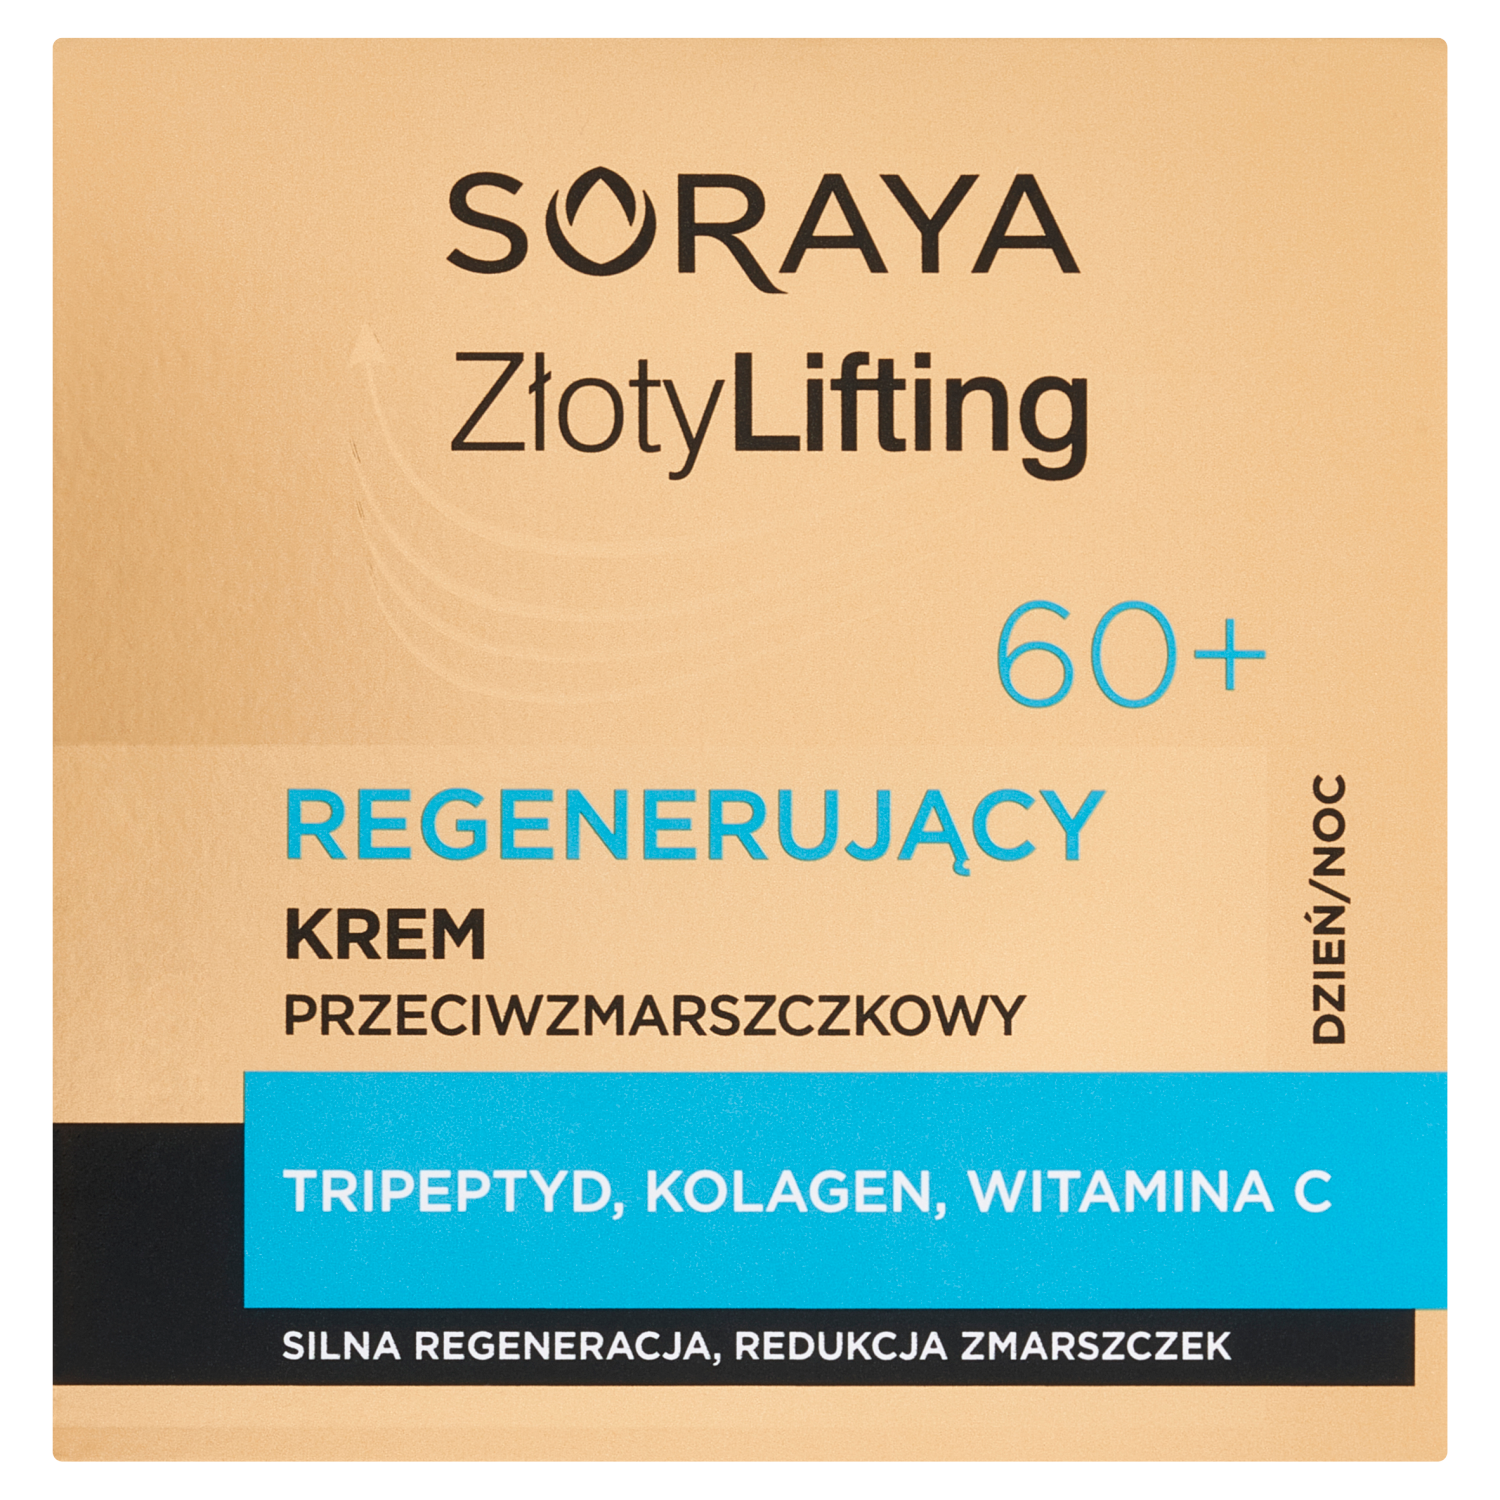 Регенерирующий крем для лица от морщин 60+ Soraya Złoty Lifting, 50 мл пешкова галина шретер александр растения в домашней косметике и дерматологии